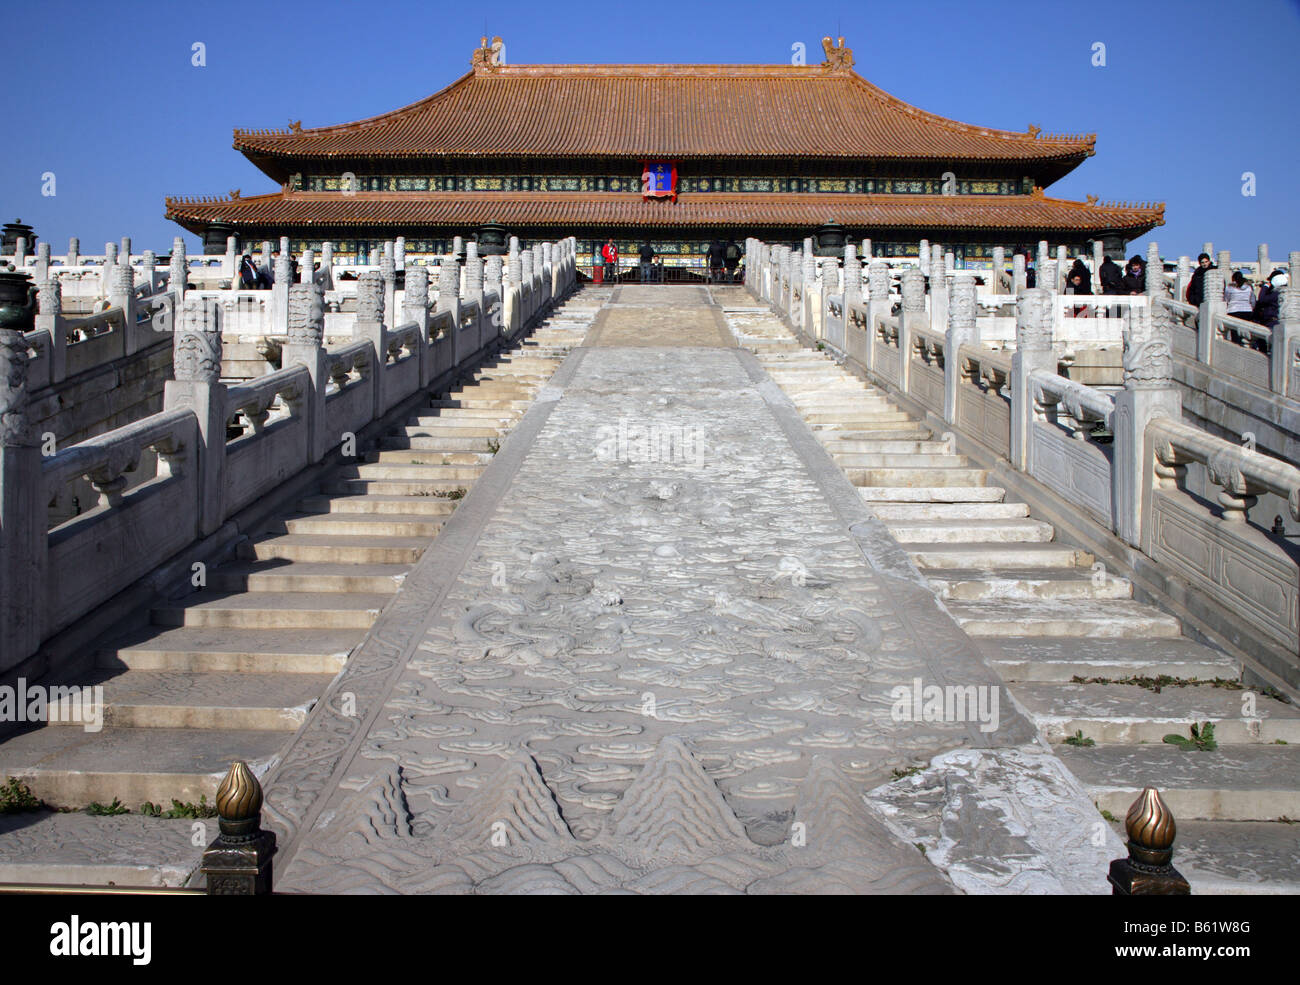 Escalier Salle de hautes exigences (3 étoiles) Forbidden City Beijing Chine Banque D'Images